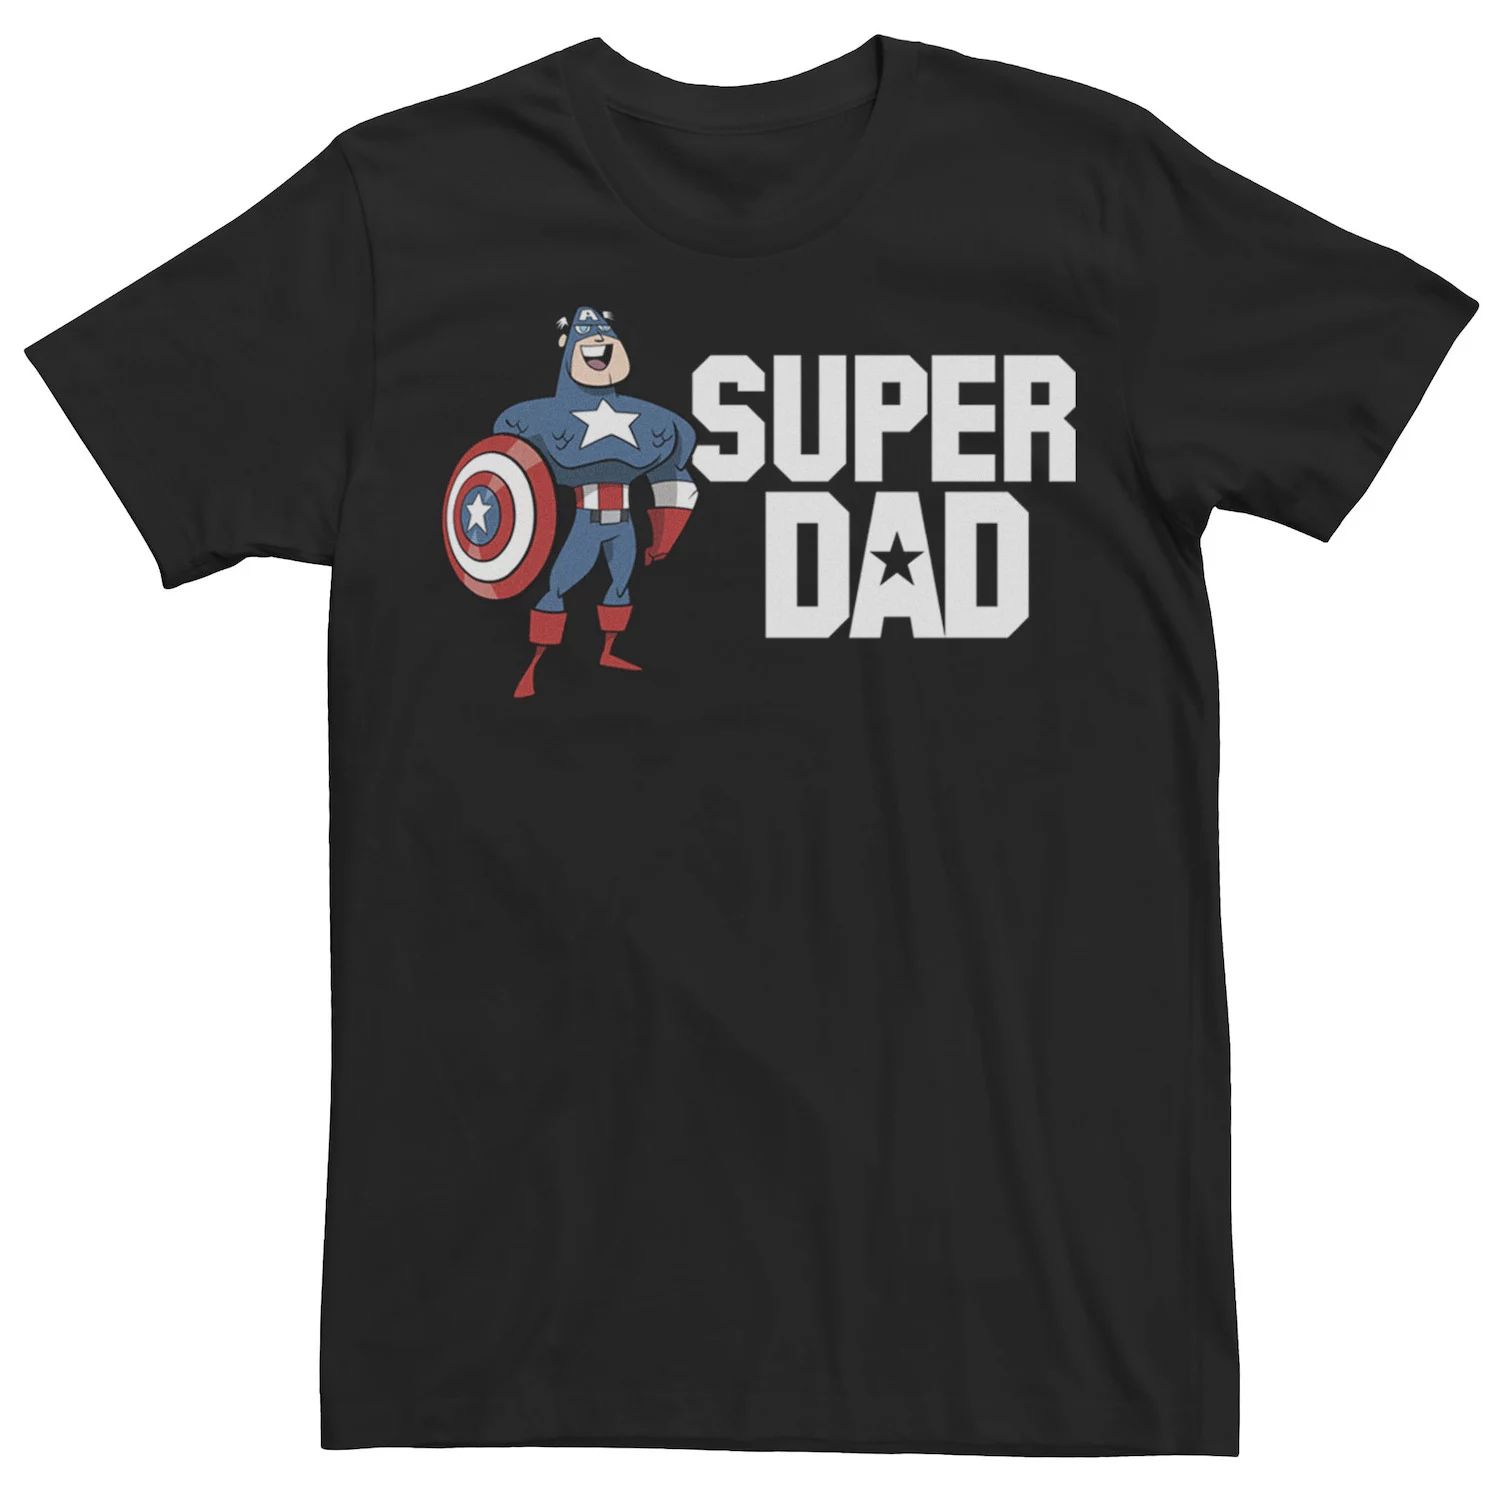 Мужская футболка с портретом Капитана Америки и Суперпапы на День отца Marvel тетрадь для суперпапы валеры